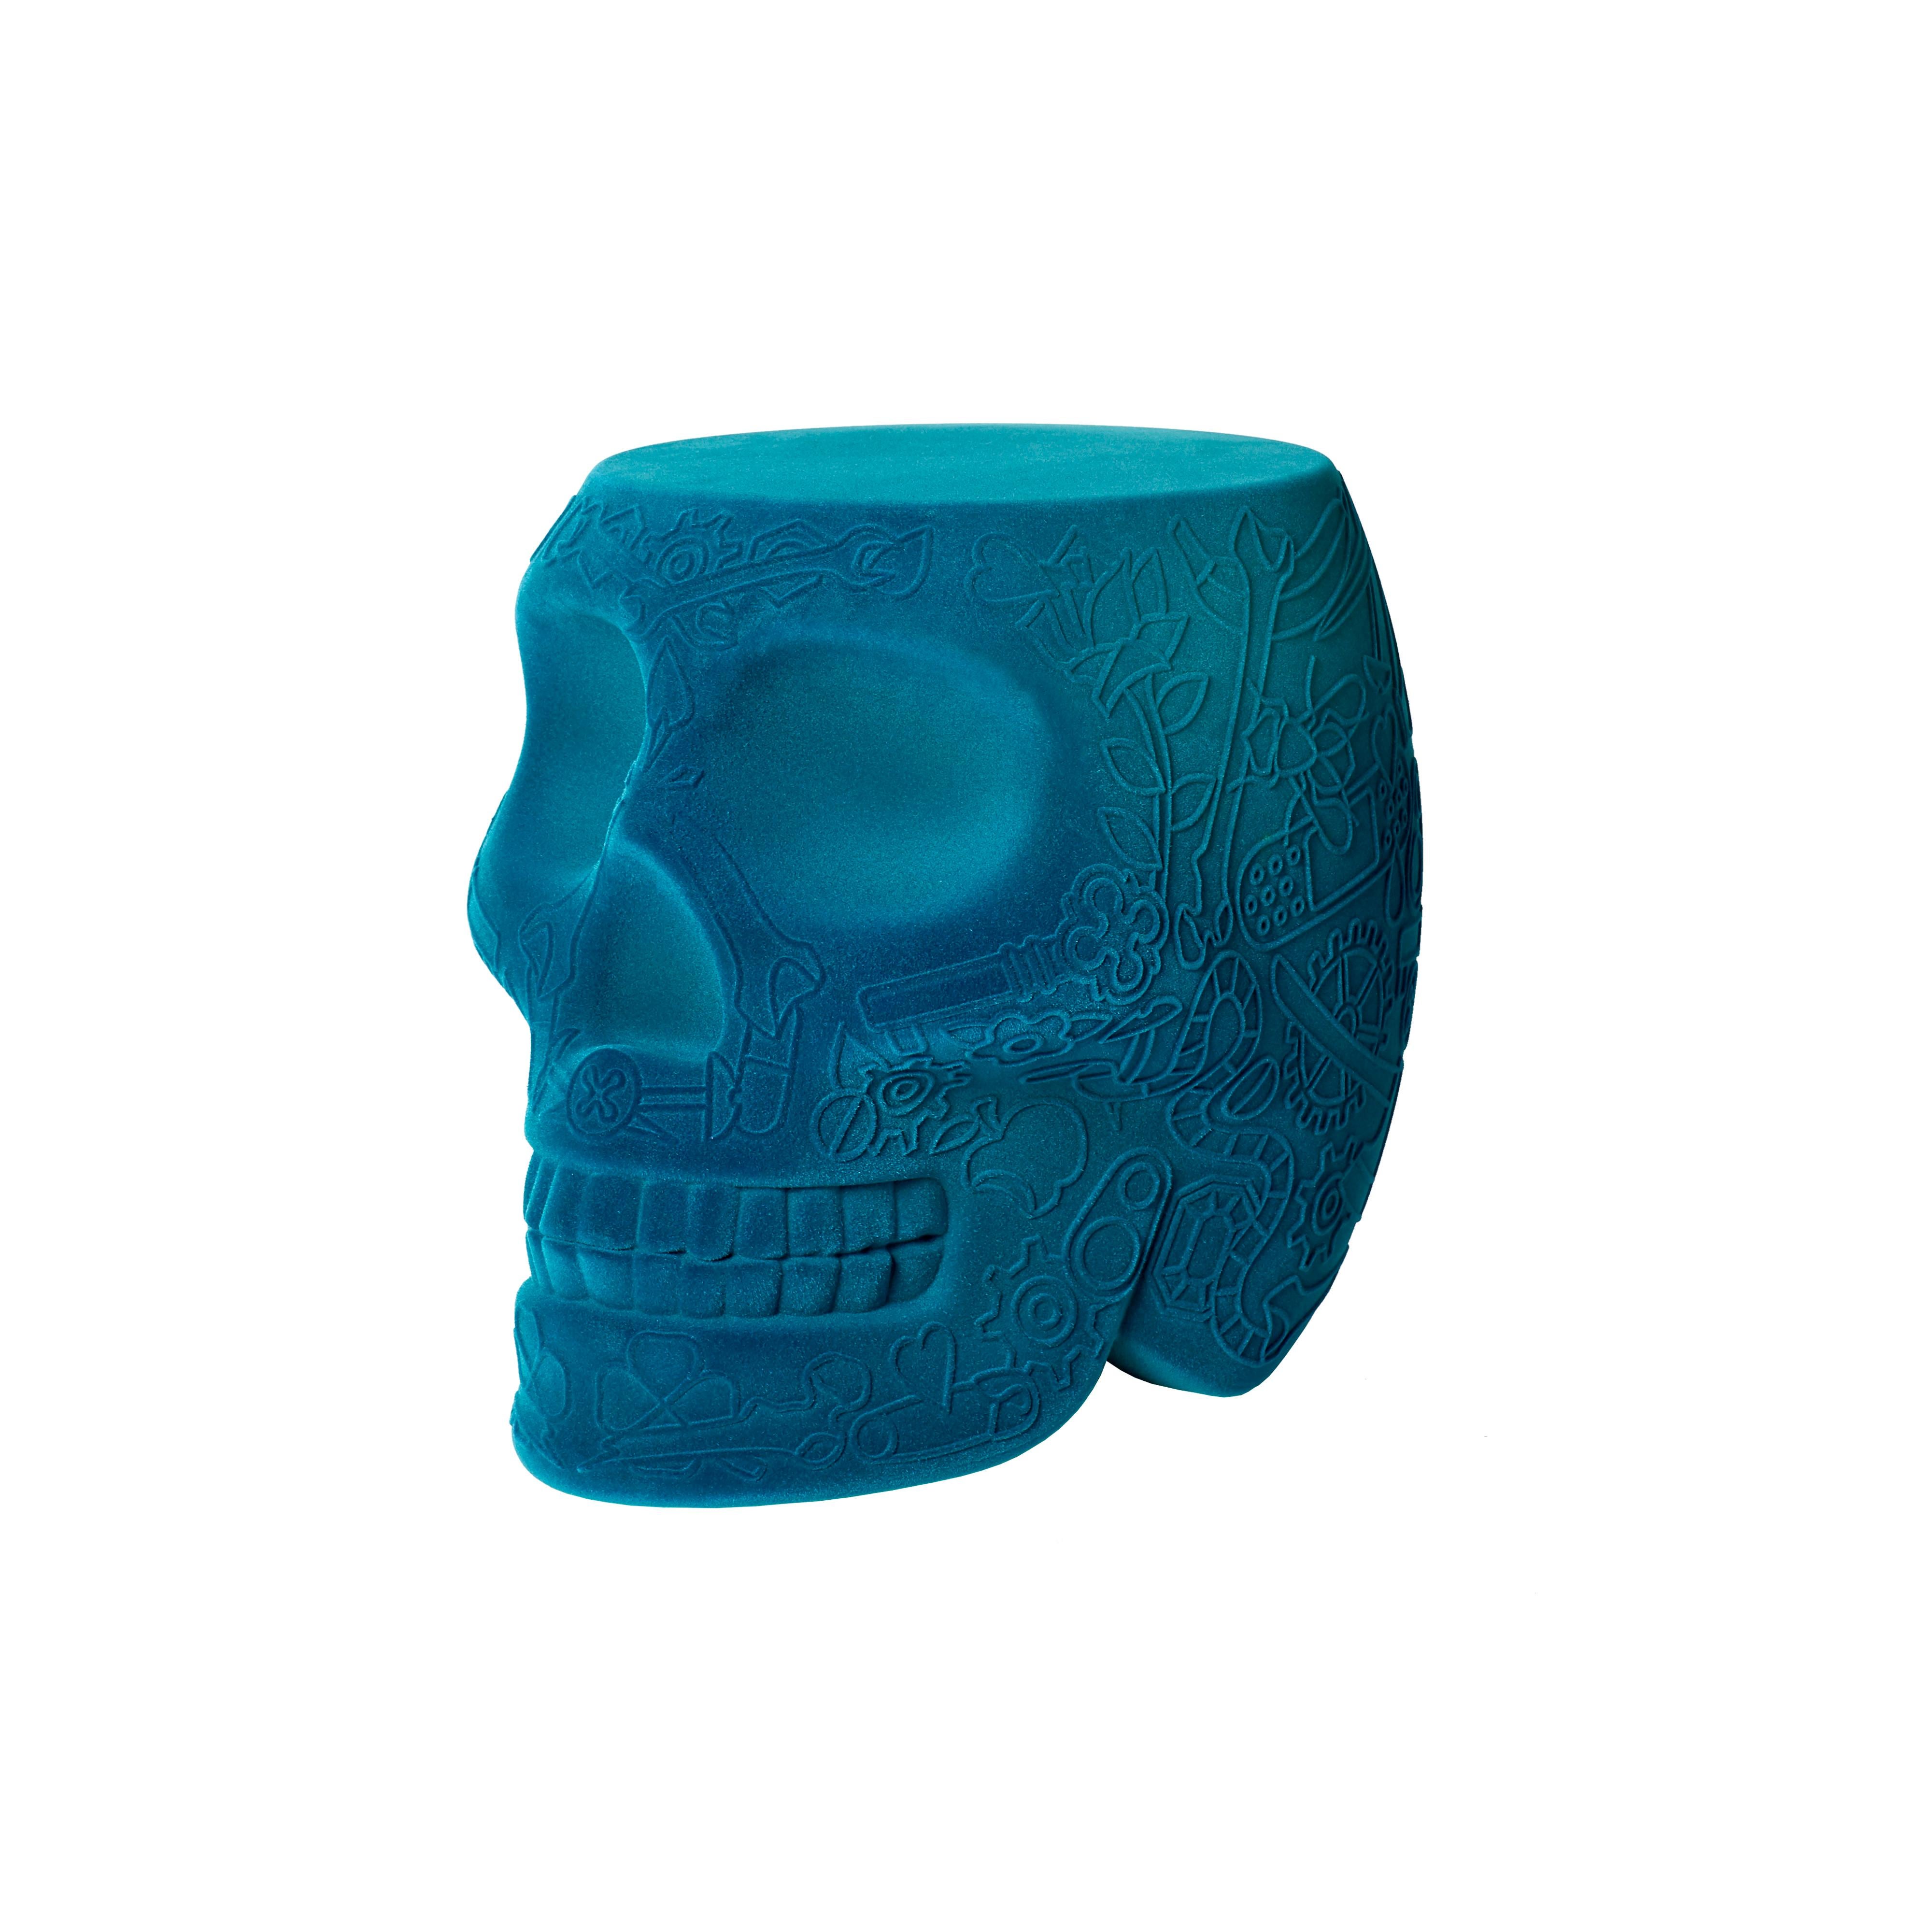 Blue (Light Blue) Modern Velvet Mexican Calavera Skull Stool or Side Table By Studio Job 2